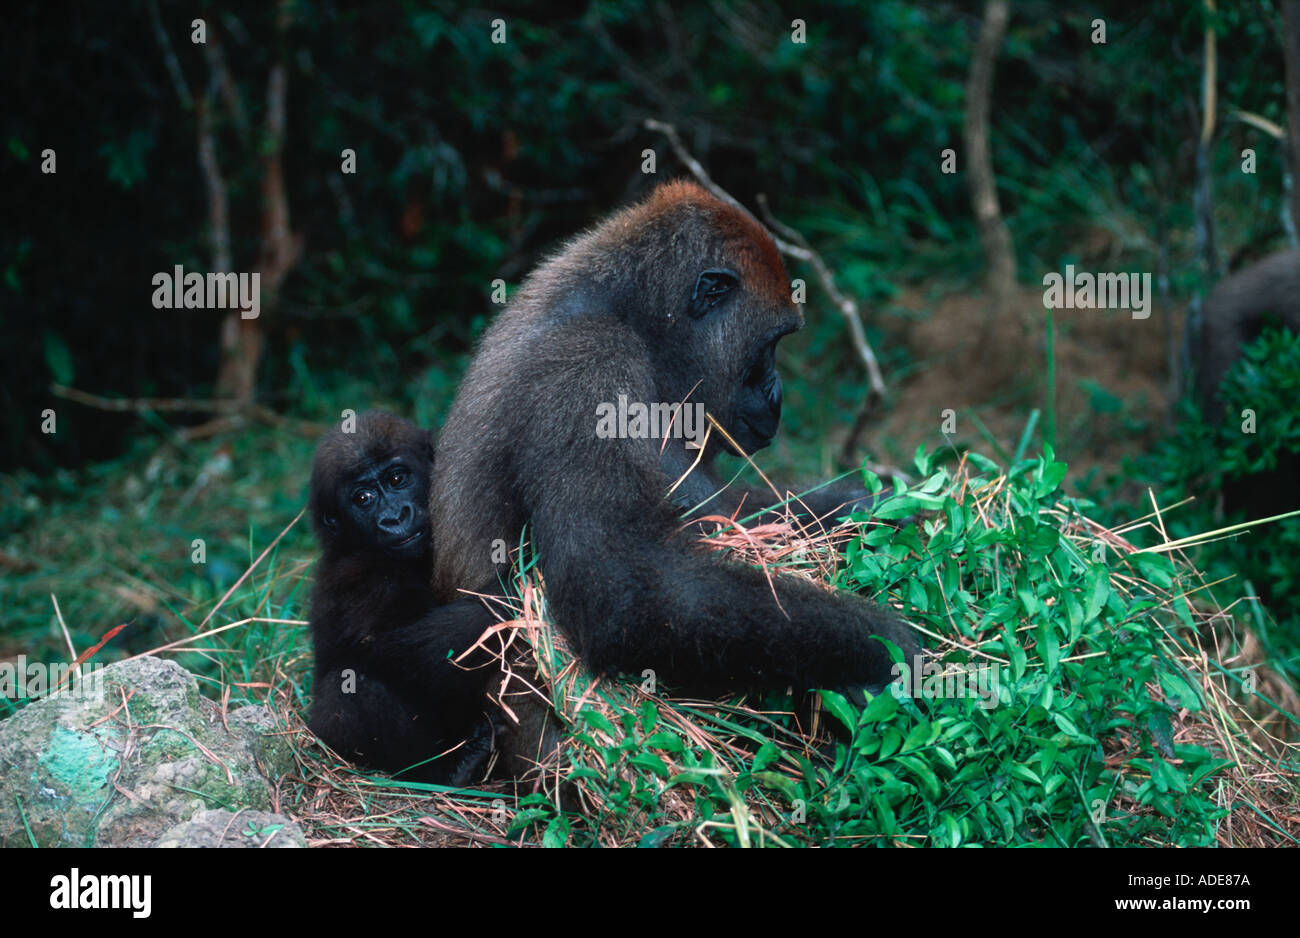 Western pianura gorilla gorilla orfani reintrodotta nel selvatica minacciate di estinzione Projet Protection des Gorilles Gabon Congo Foto Stock